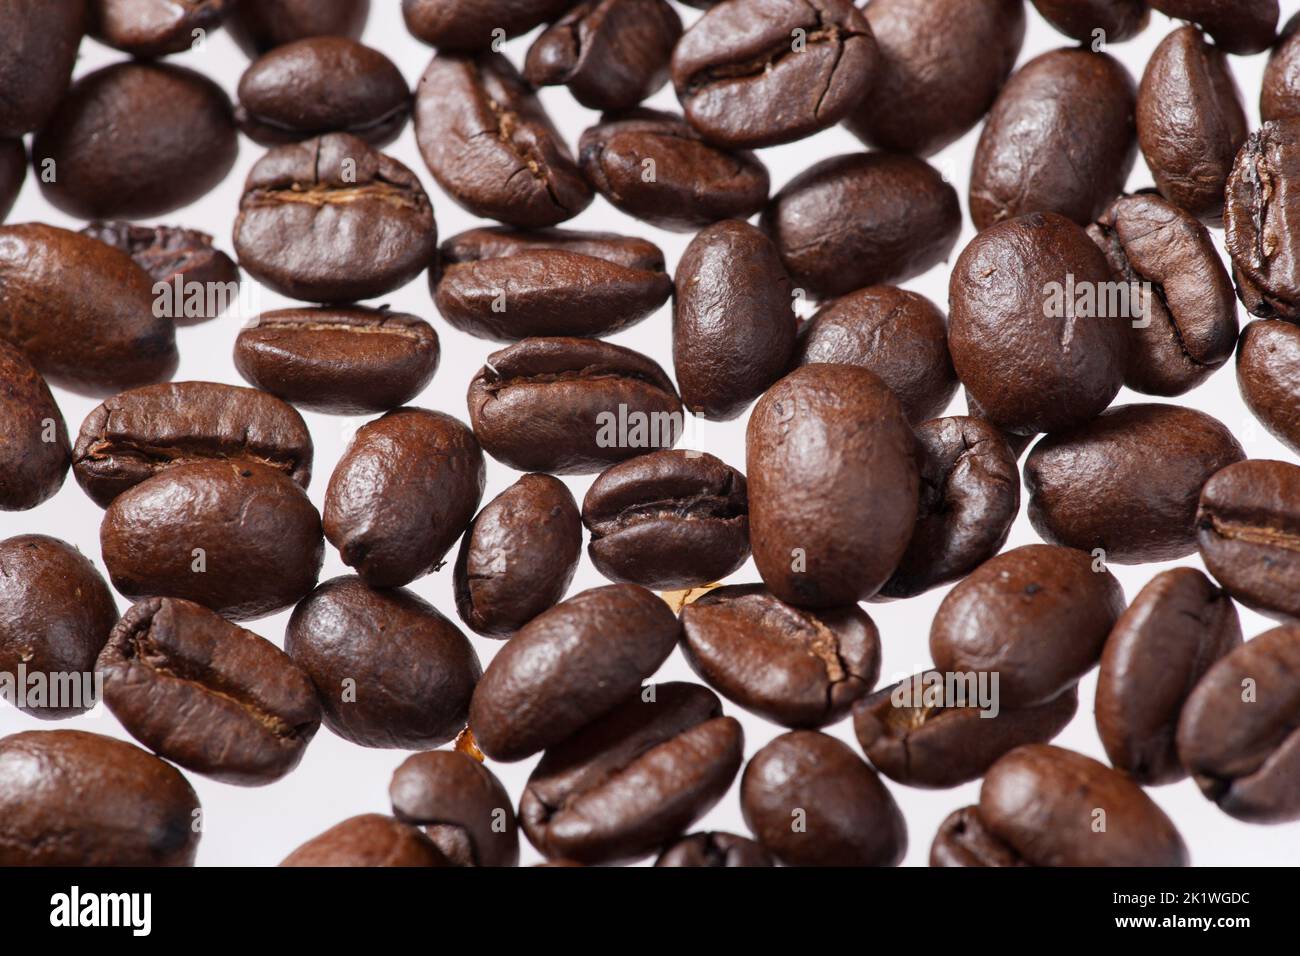 Café arábigo, Arabiskt kaffe (Coffea arabica) Foto de stock